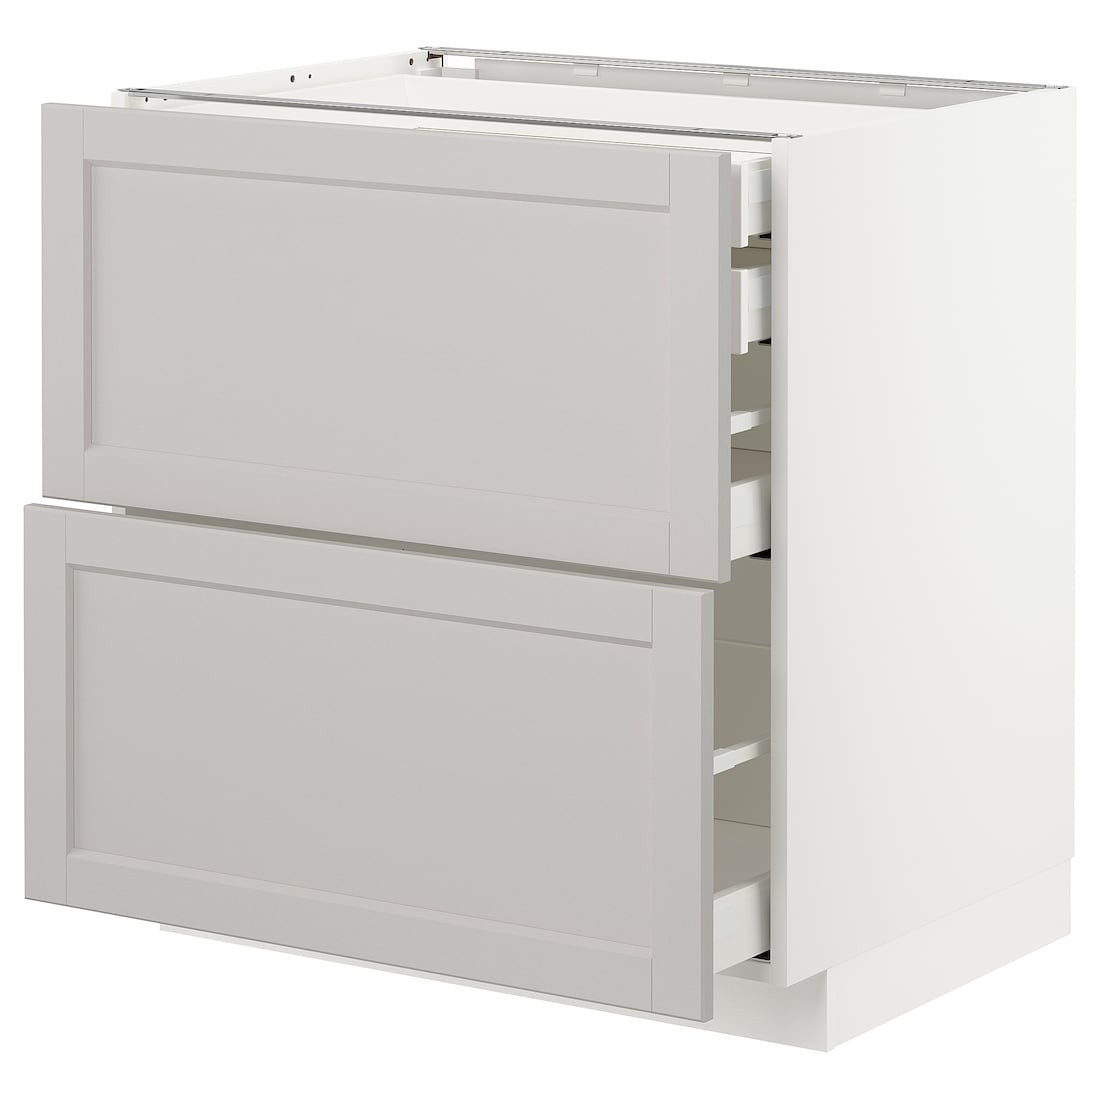 IKEA METOD МЕТОД / MAXIMERA МАКСИМЕРА Напольный шкаф с ящиками, белый / Lerhyttan светло-серый, 80x60 см 09274335 | 092.743.35